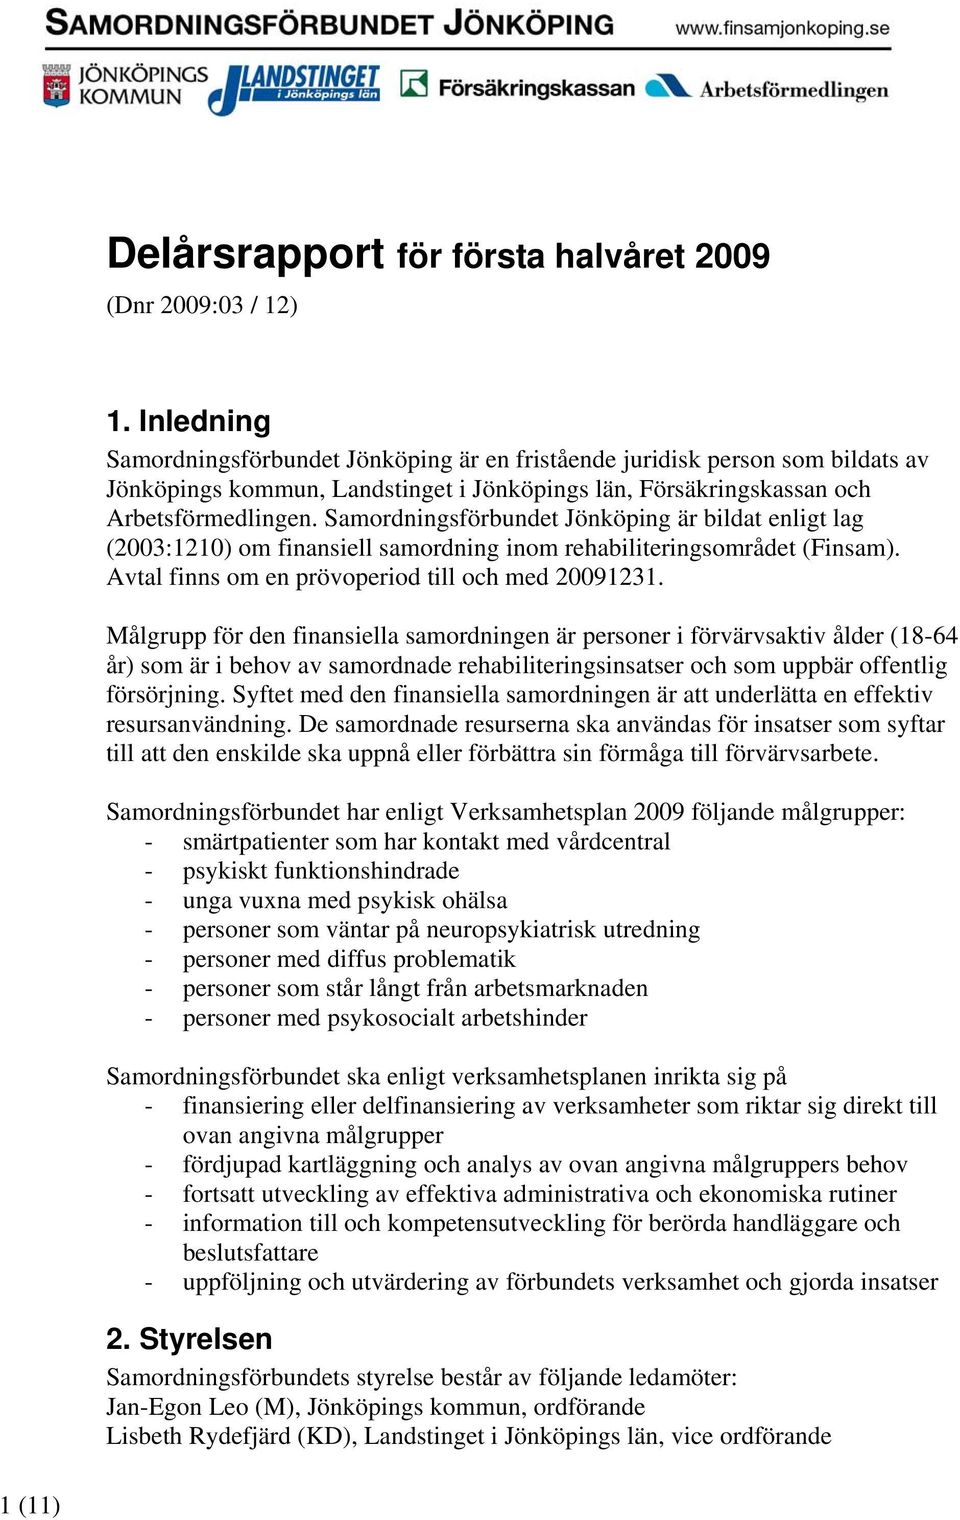 Samordningsförbundet Jönköping är bildat enligt lag (2003:1210) om finansiell samordning inom rehabiliteringsområdet (Finsam). Avtal finns om en prövoperiod till och med 20091231.